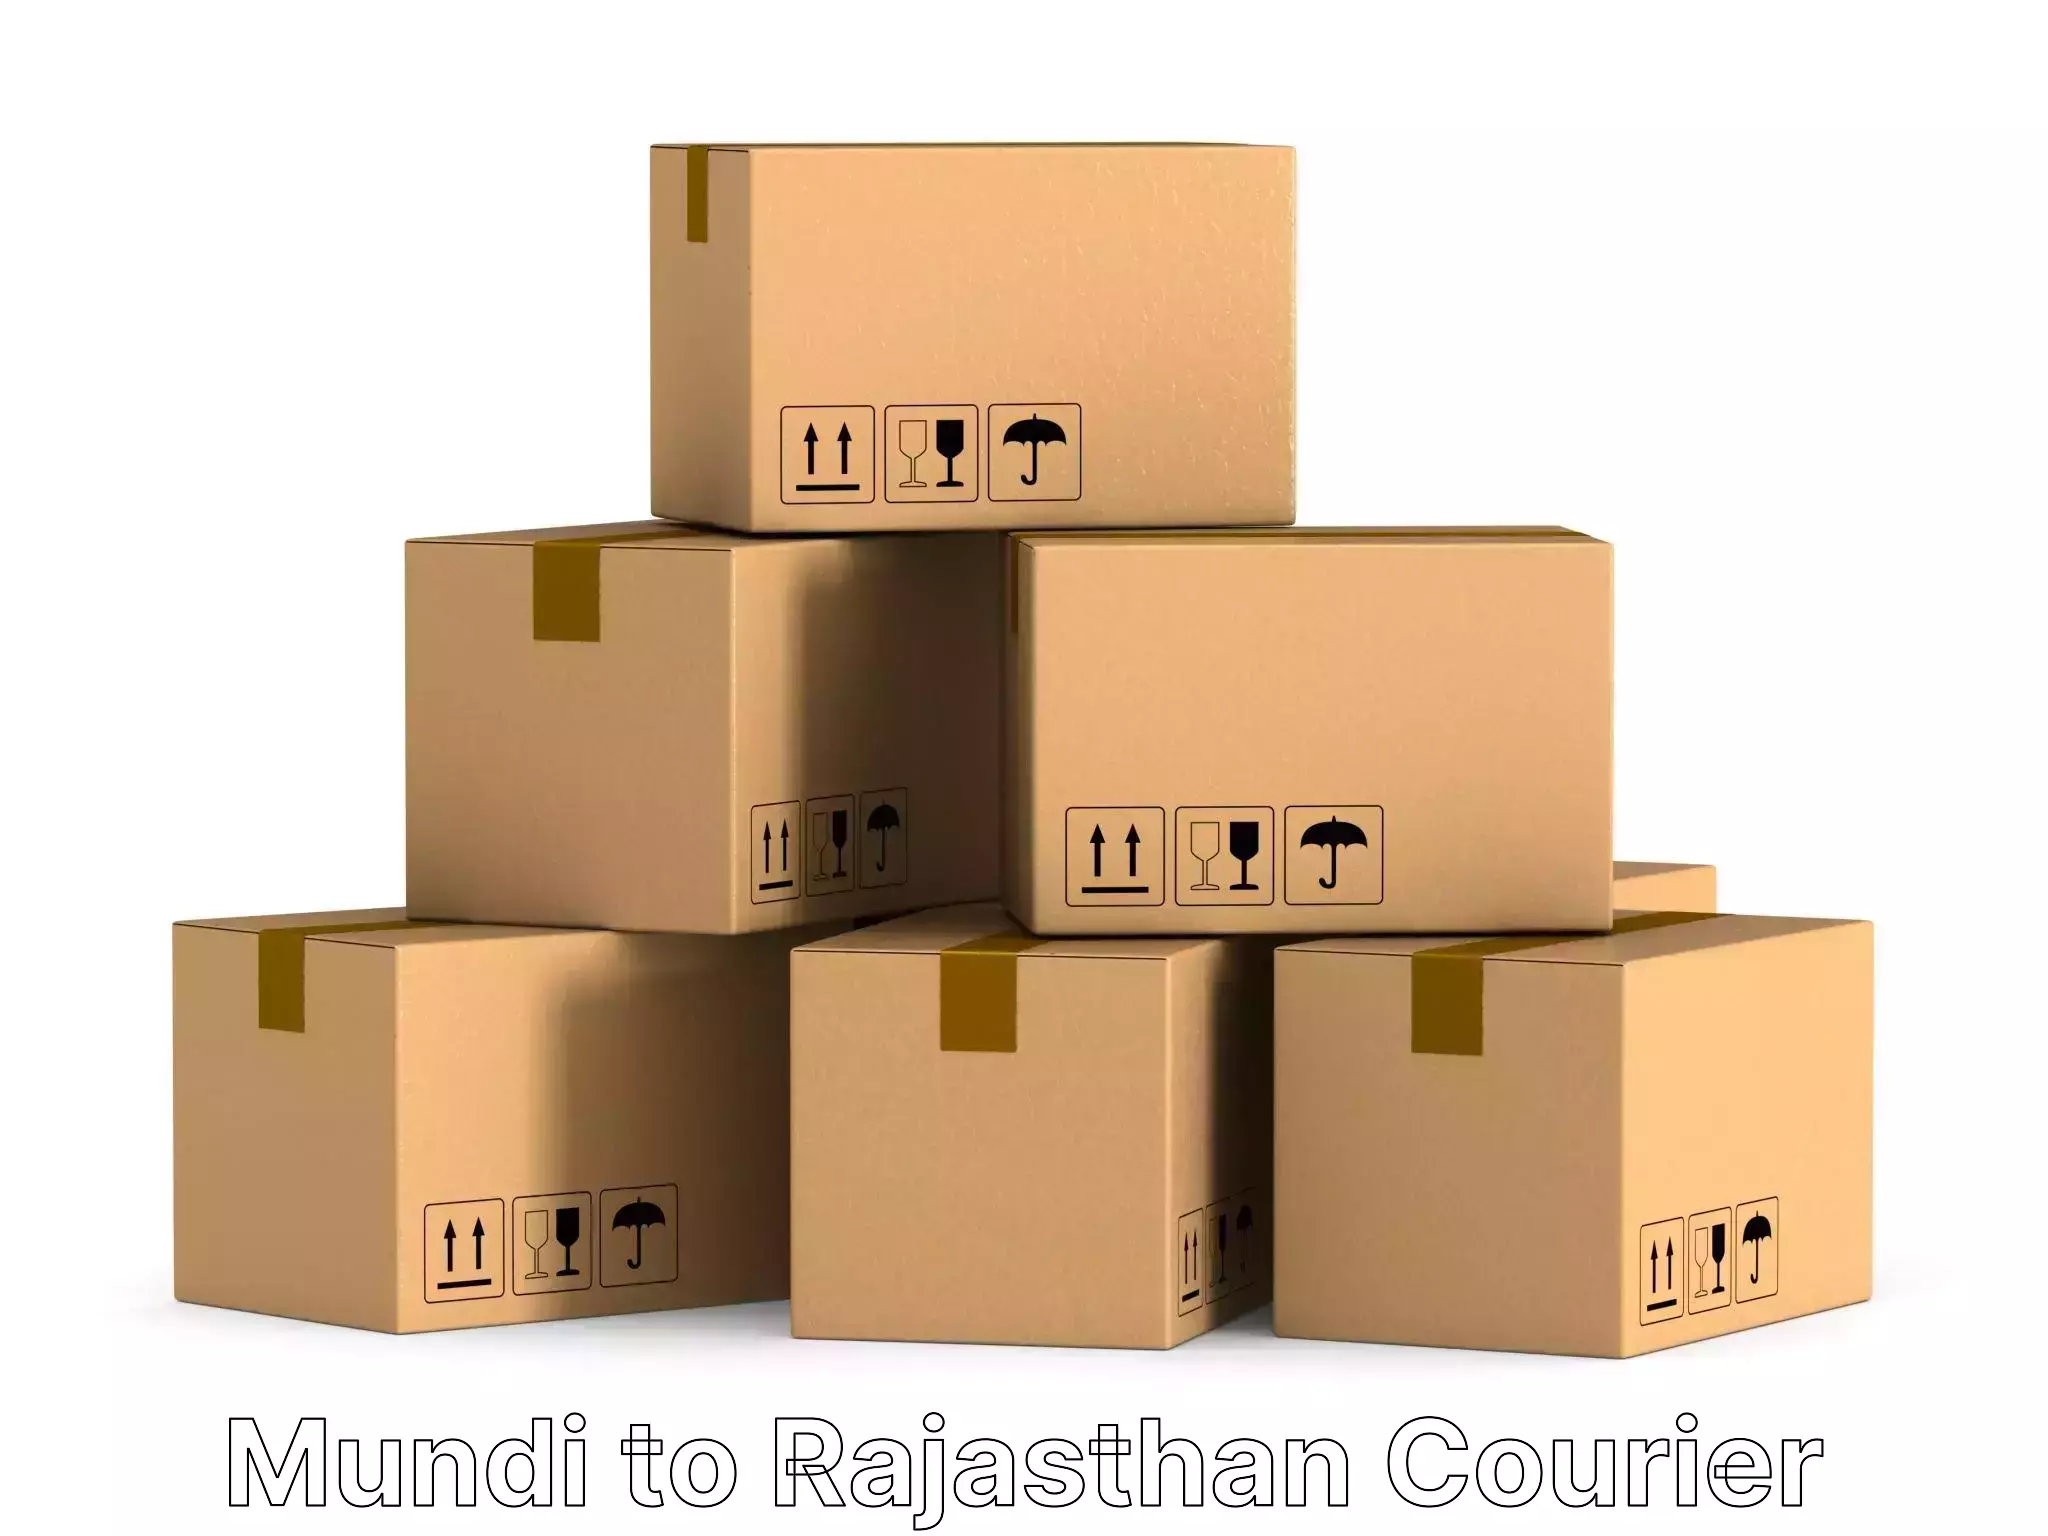 Furniture moving experts Mundi to Viratnagar